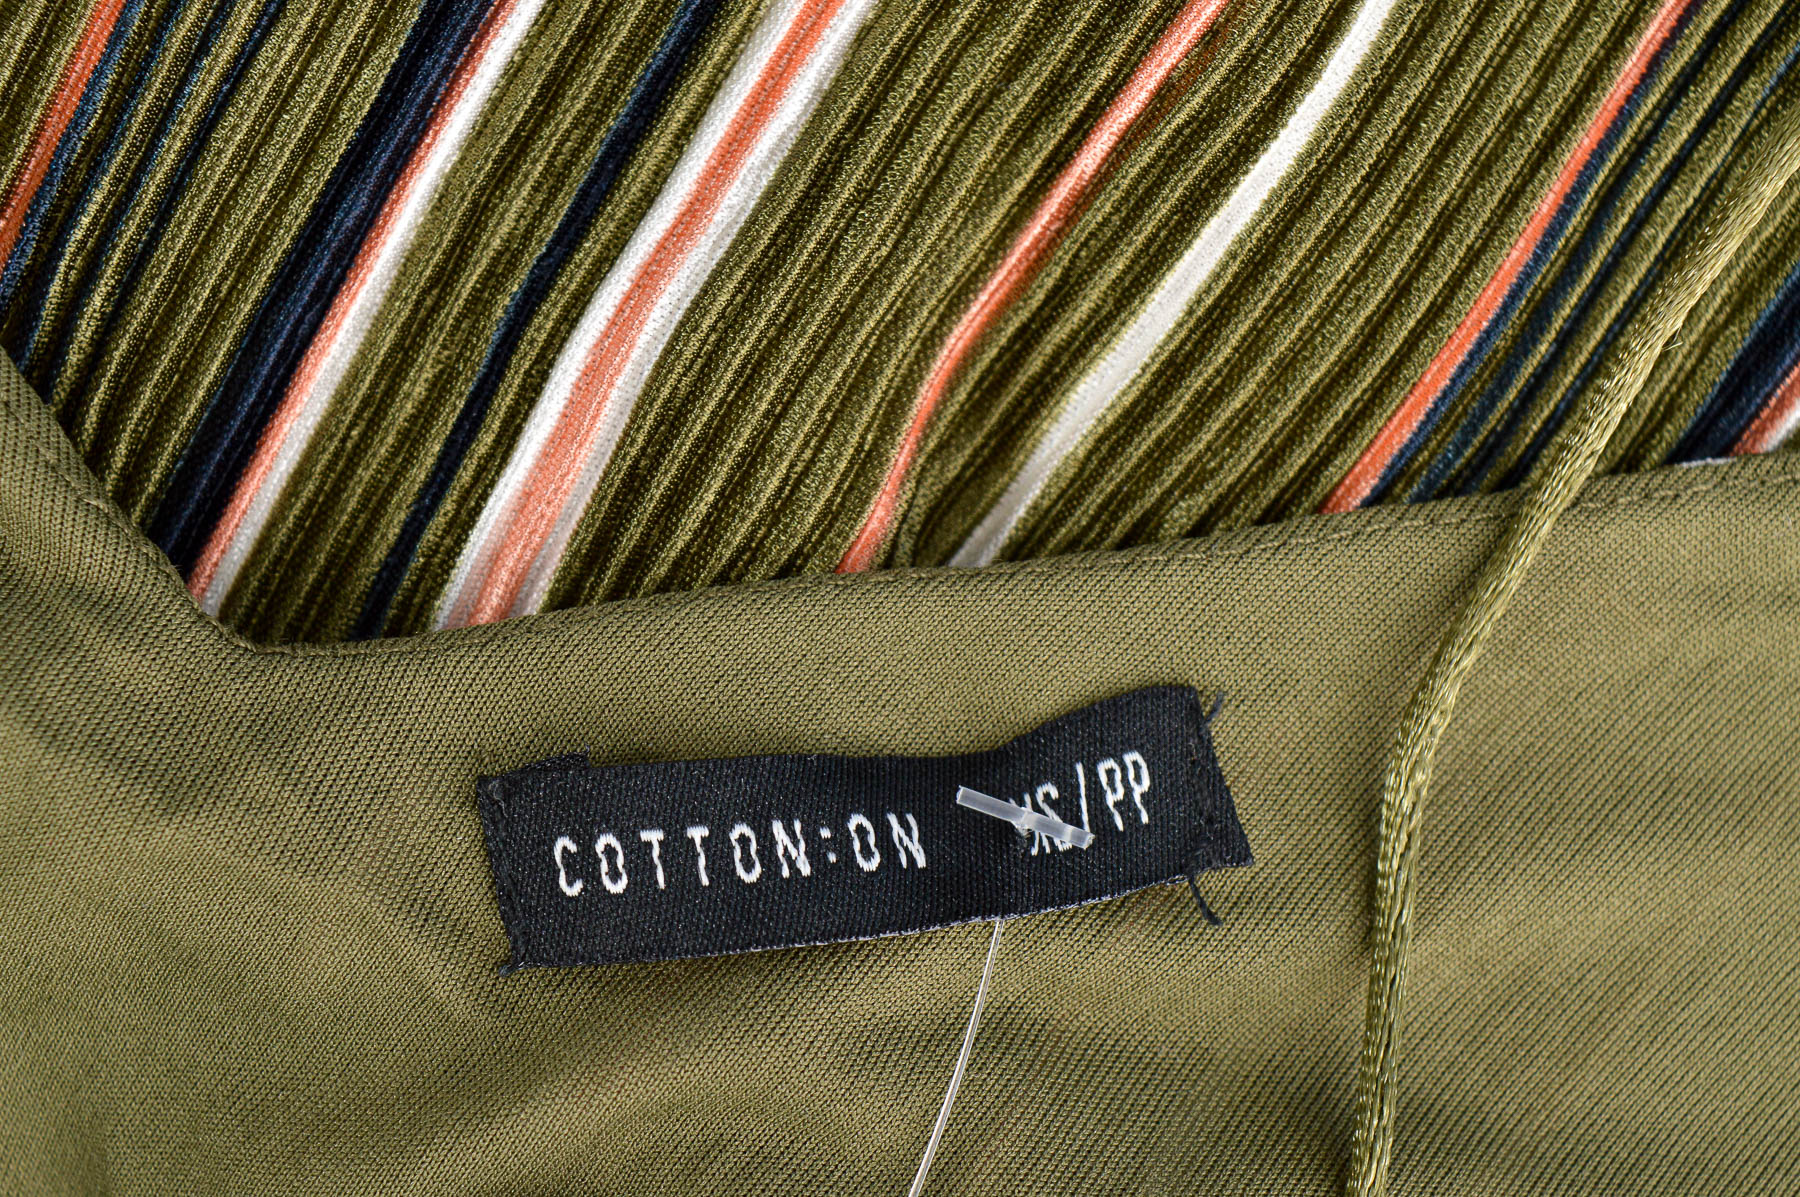 Γυναικείο πουκάμισο - COTTON:ON - 2